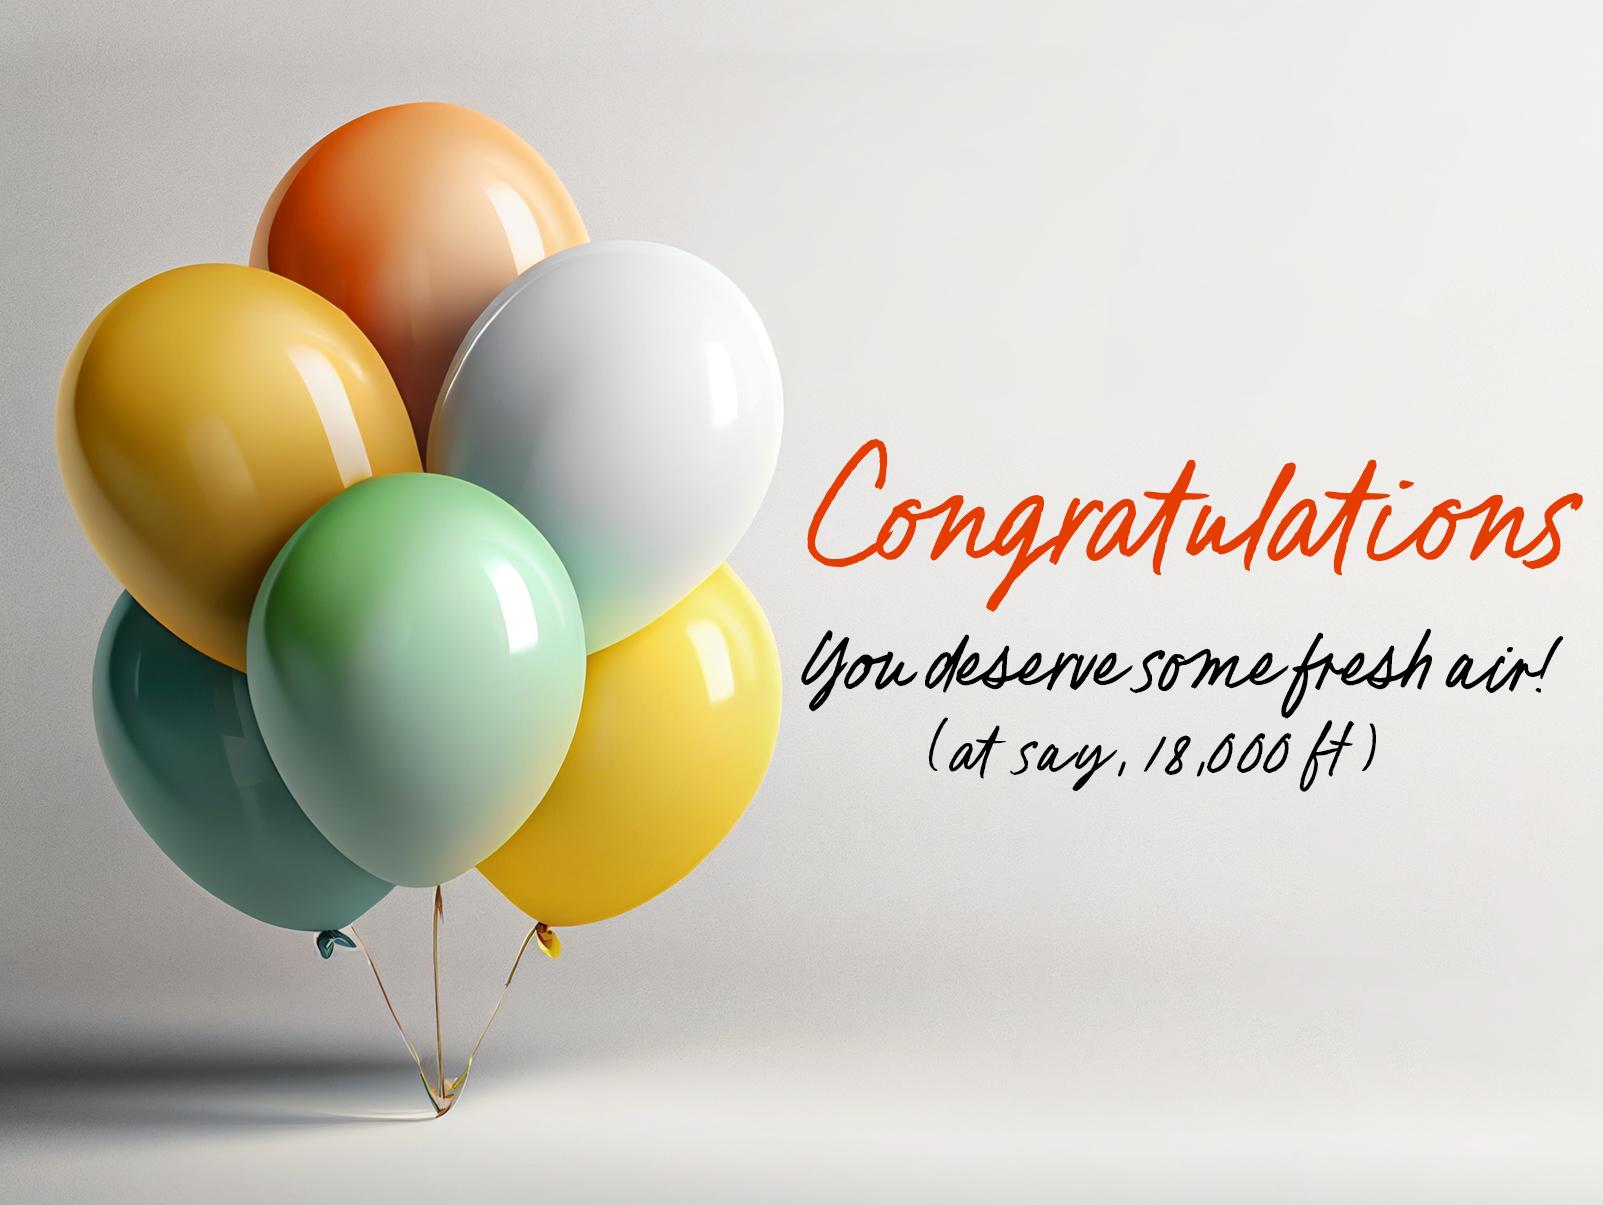 Congratulations balloons - Skydive Santa Barbara